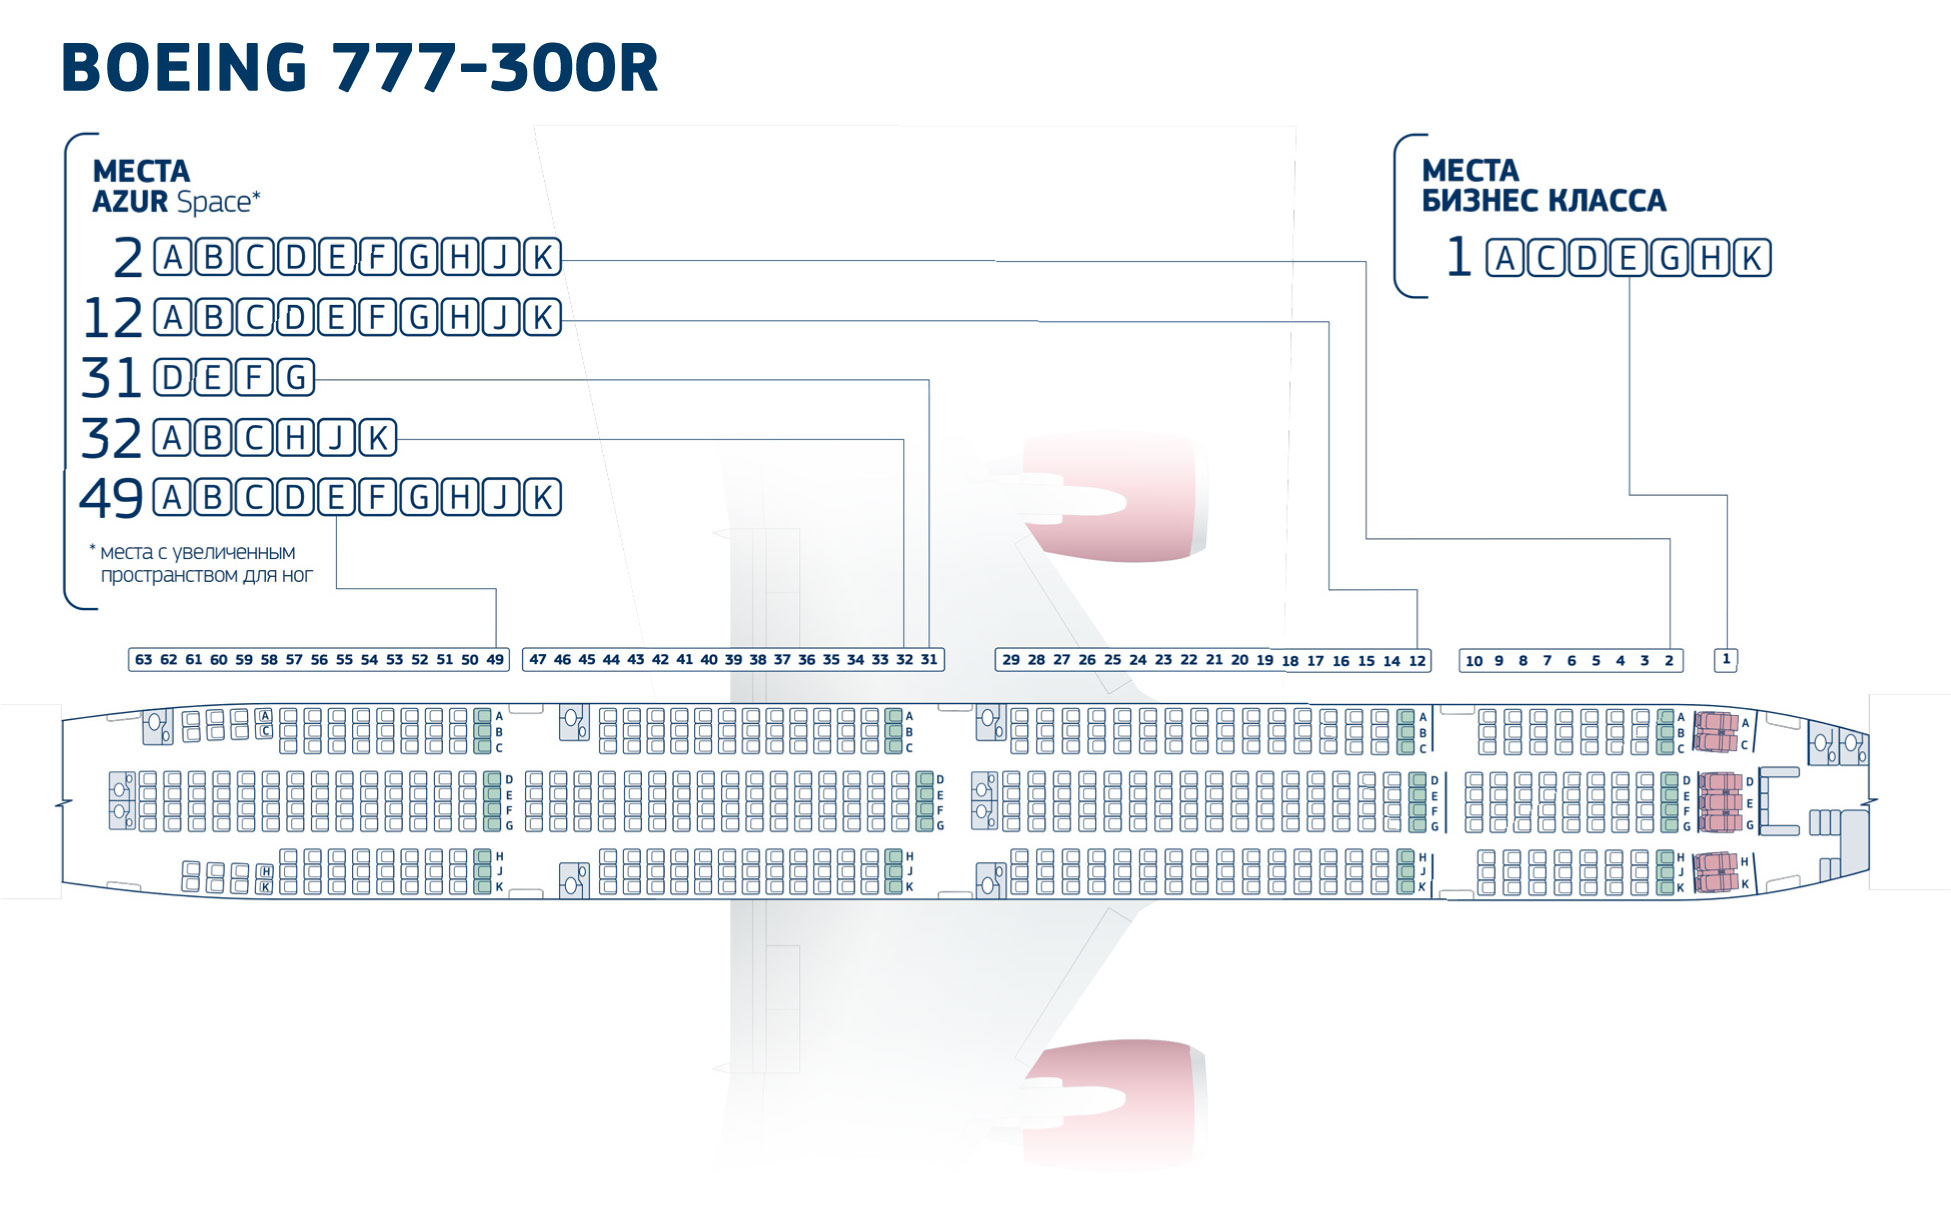 ООО «АЗУР эйр», + Our Air Fleet: Boeing 777-300ER